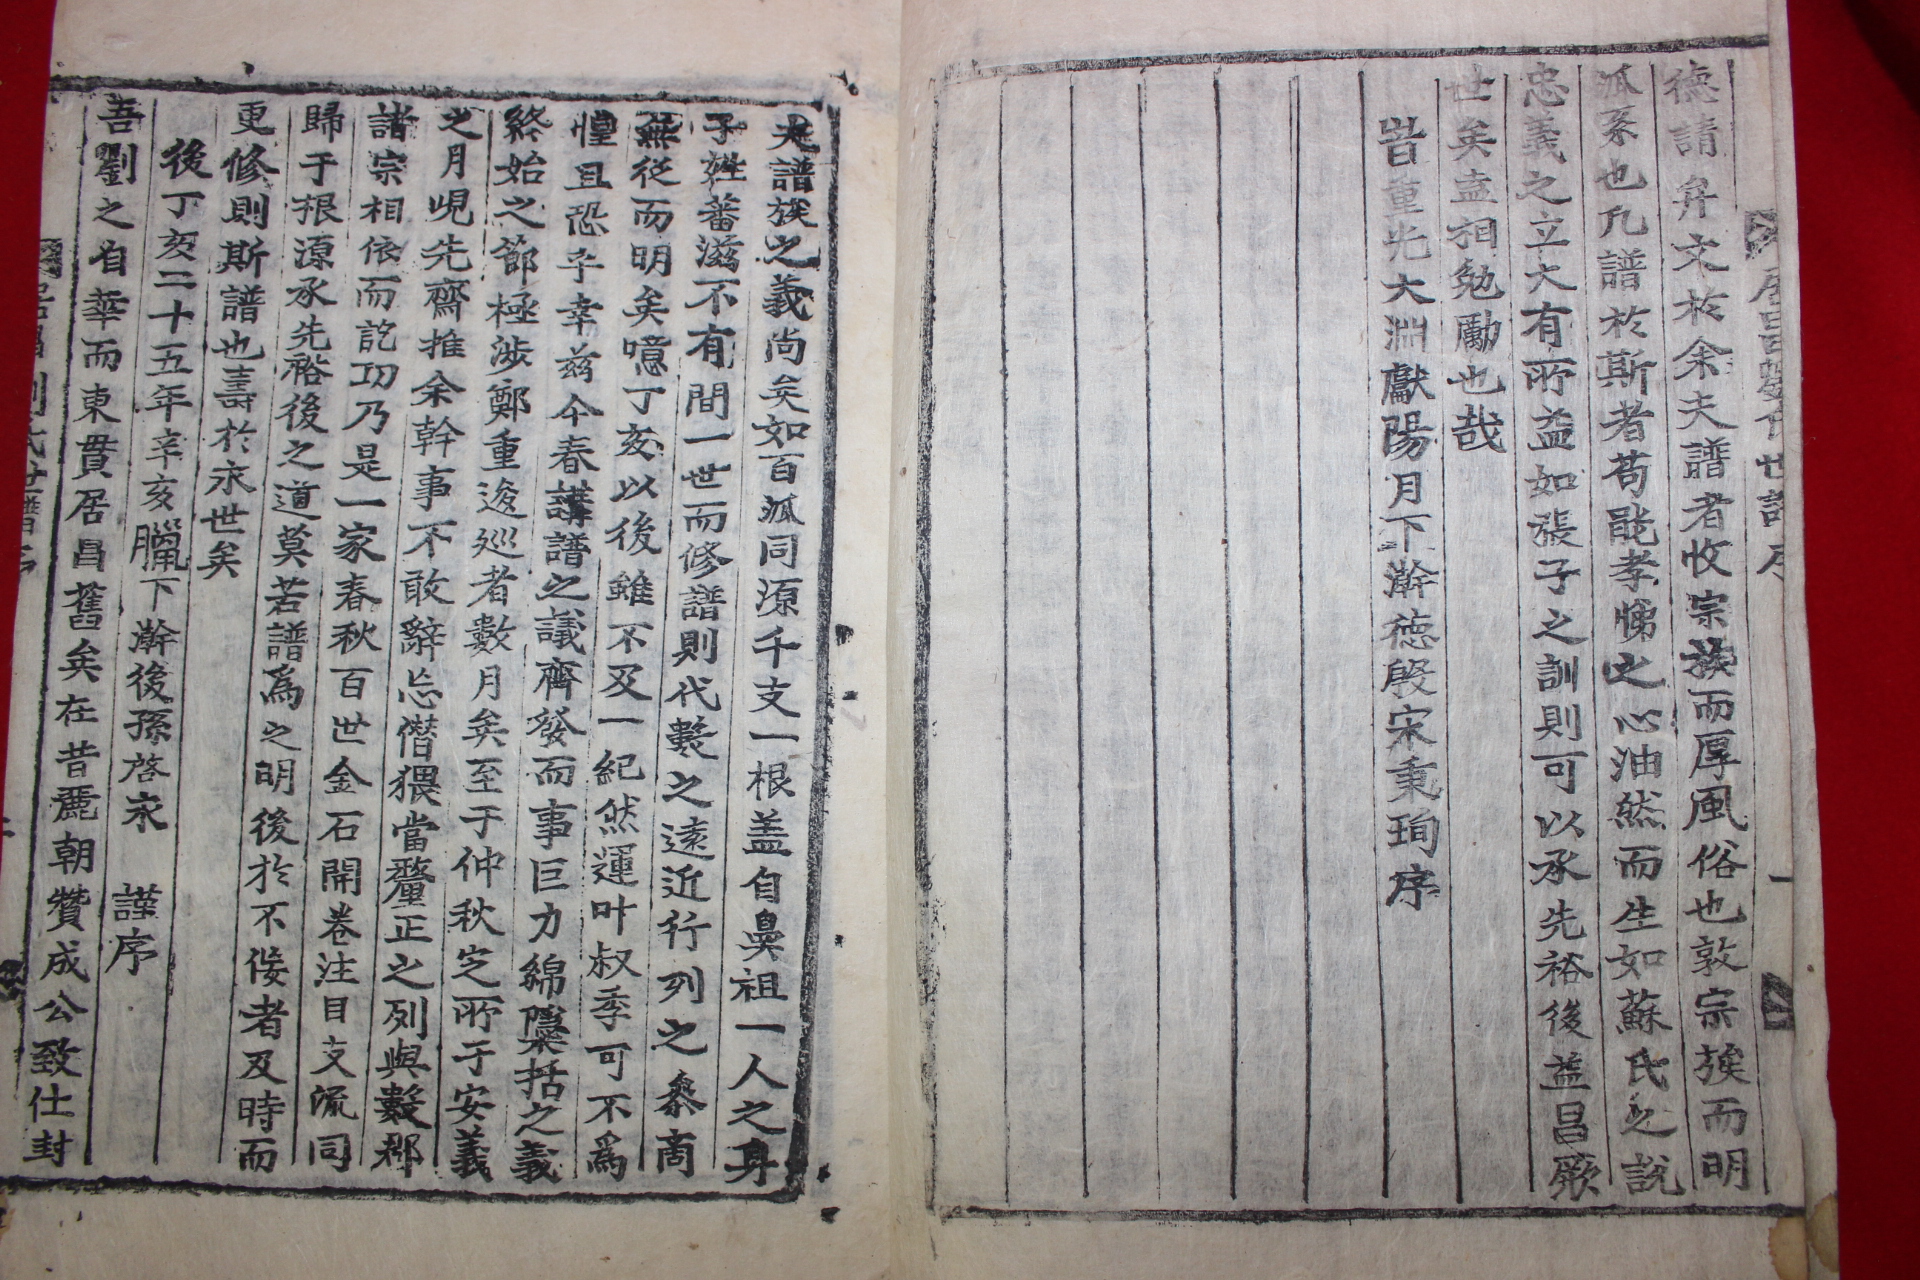 1911년(重光大淵獻) 목활자본 거창류씨세보(居昌劉氏世譜) 7권5책완질